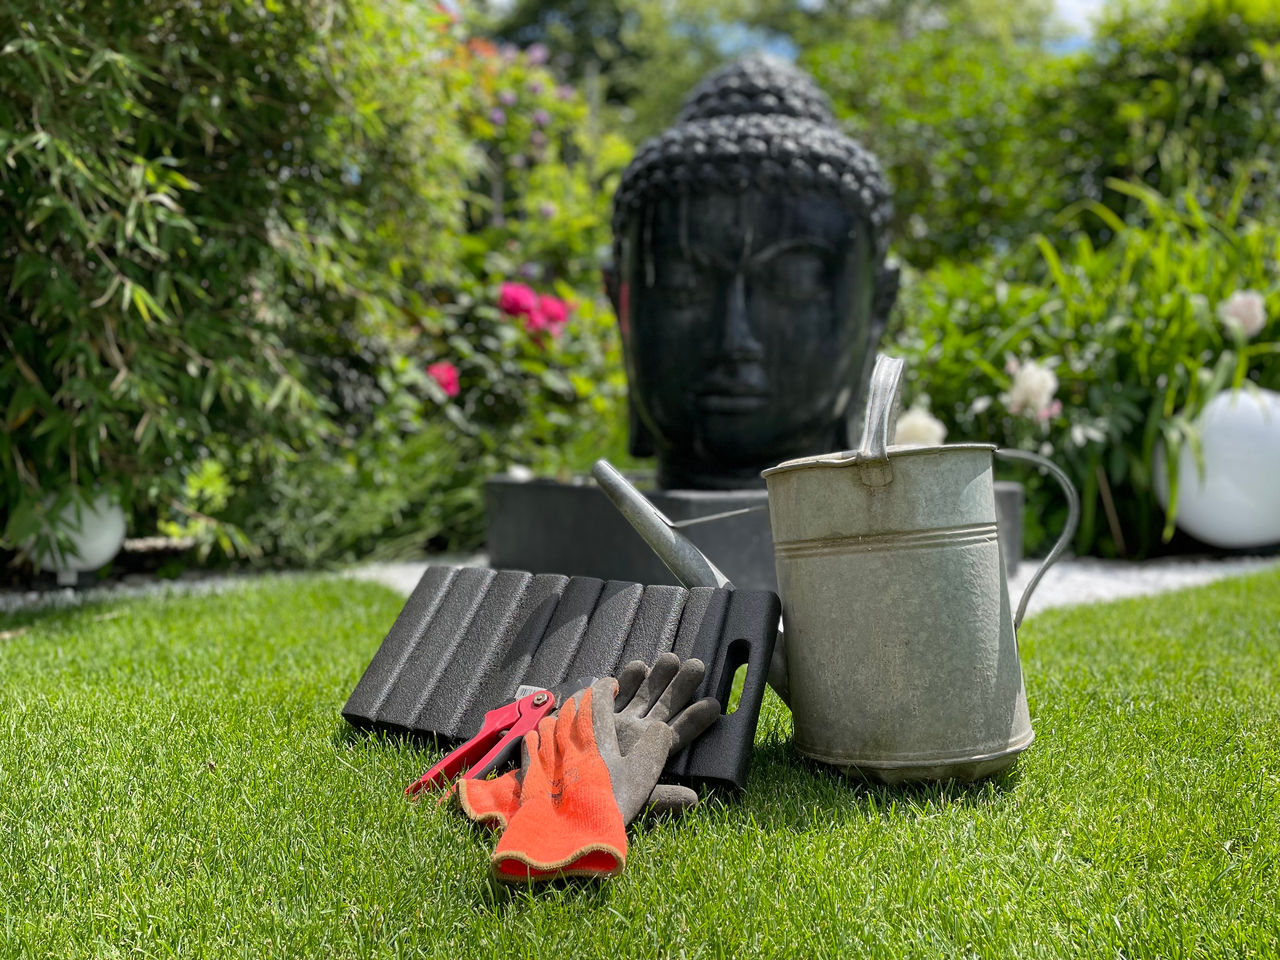 Zehn Tipps für Gartenarbeit ohne Rückenschmerzen